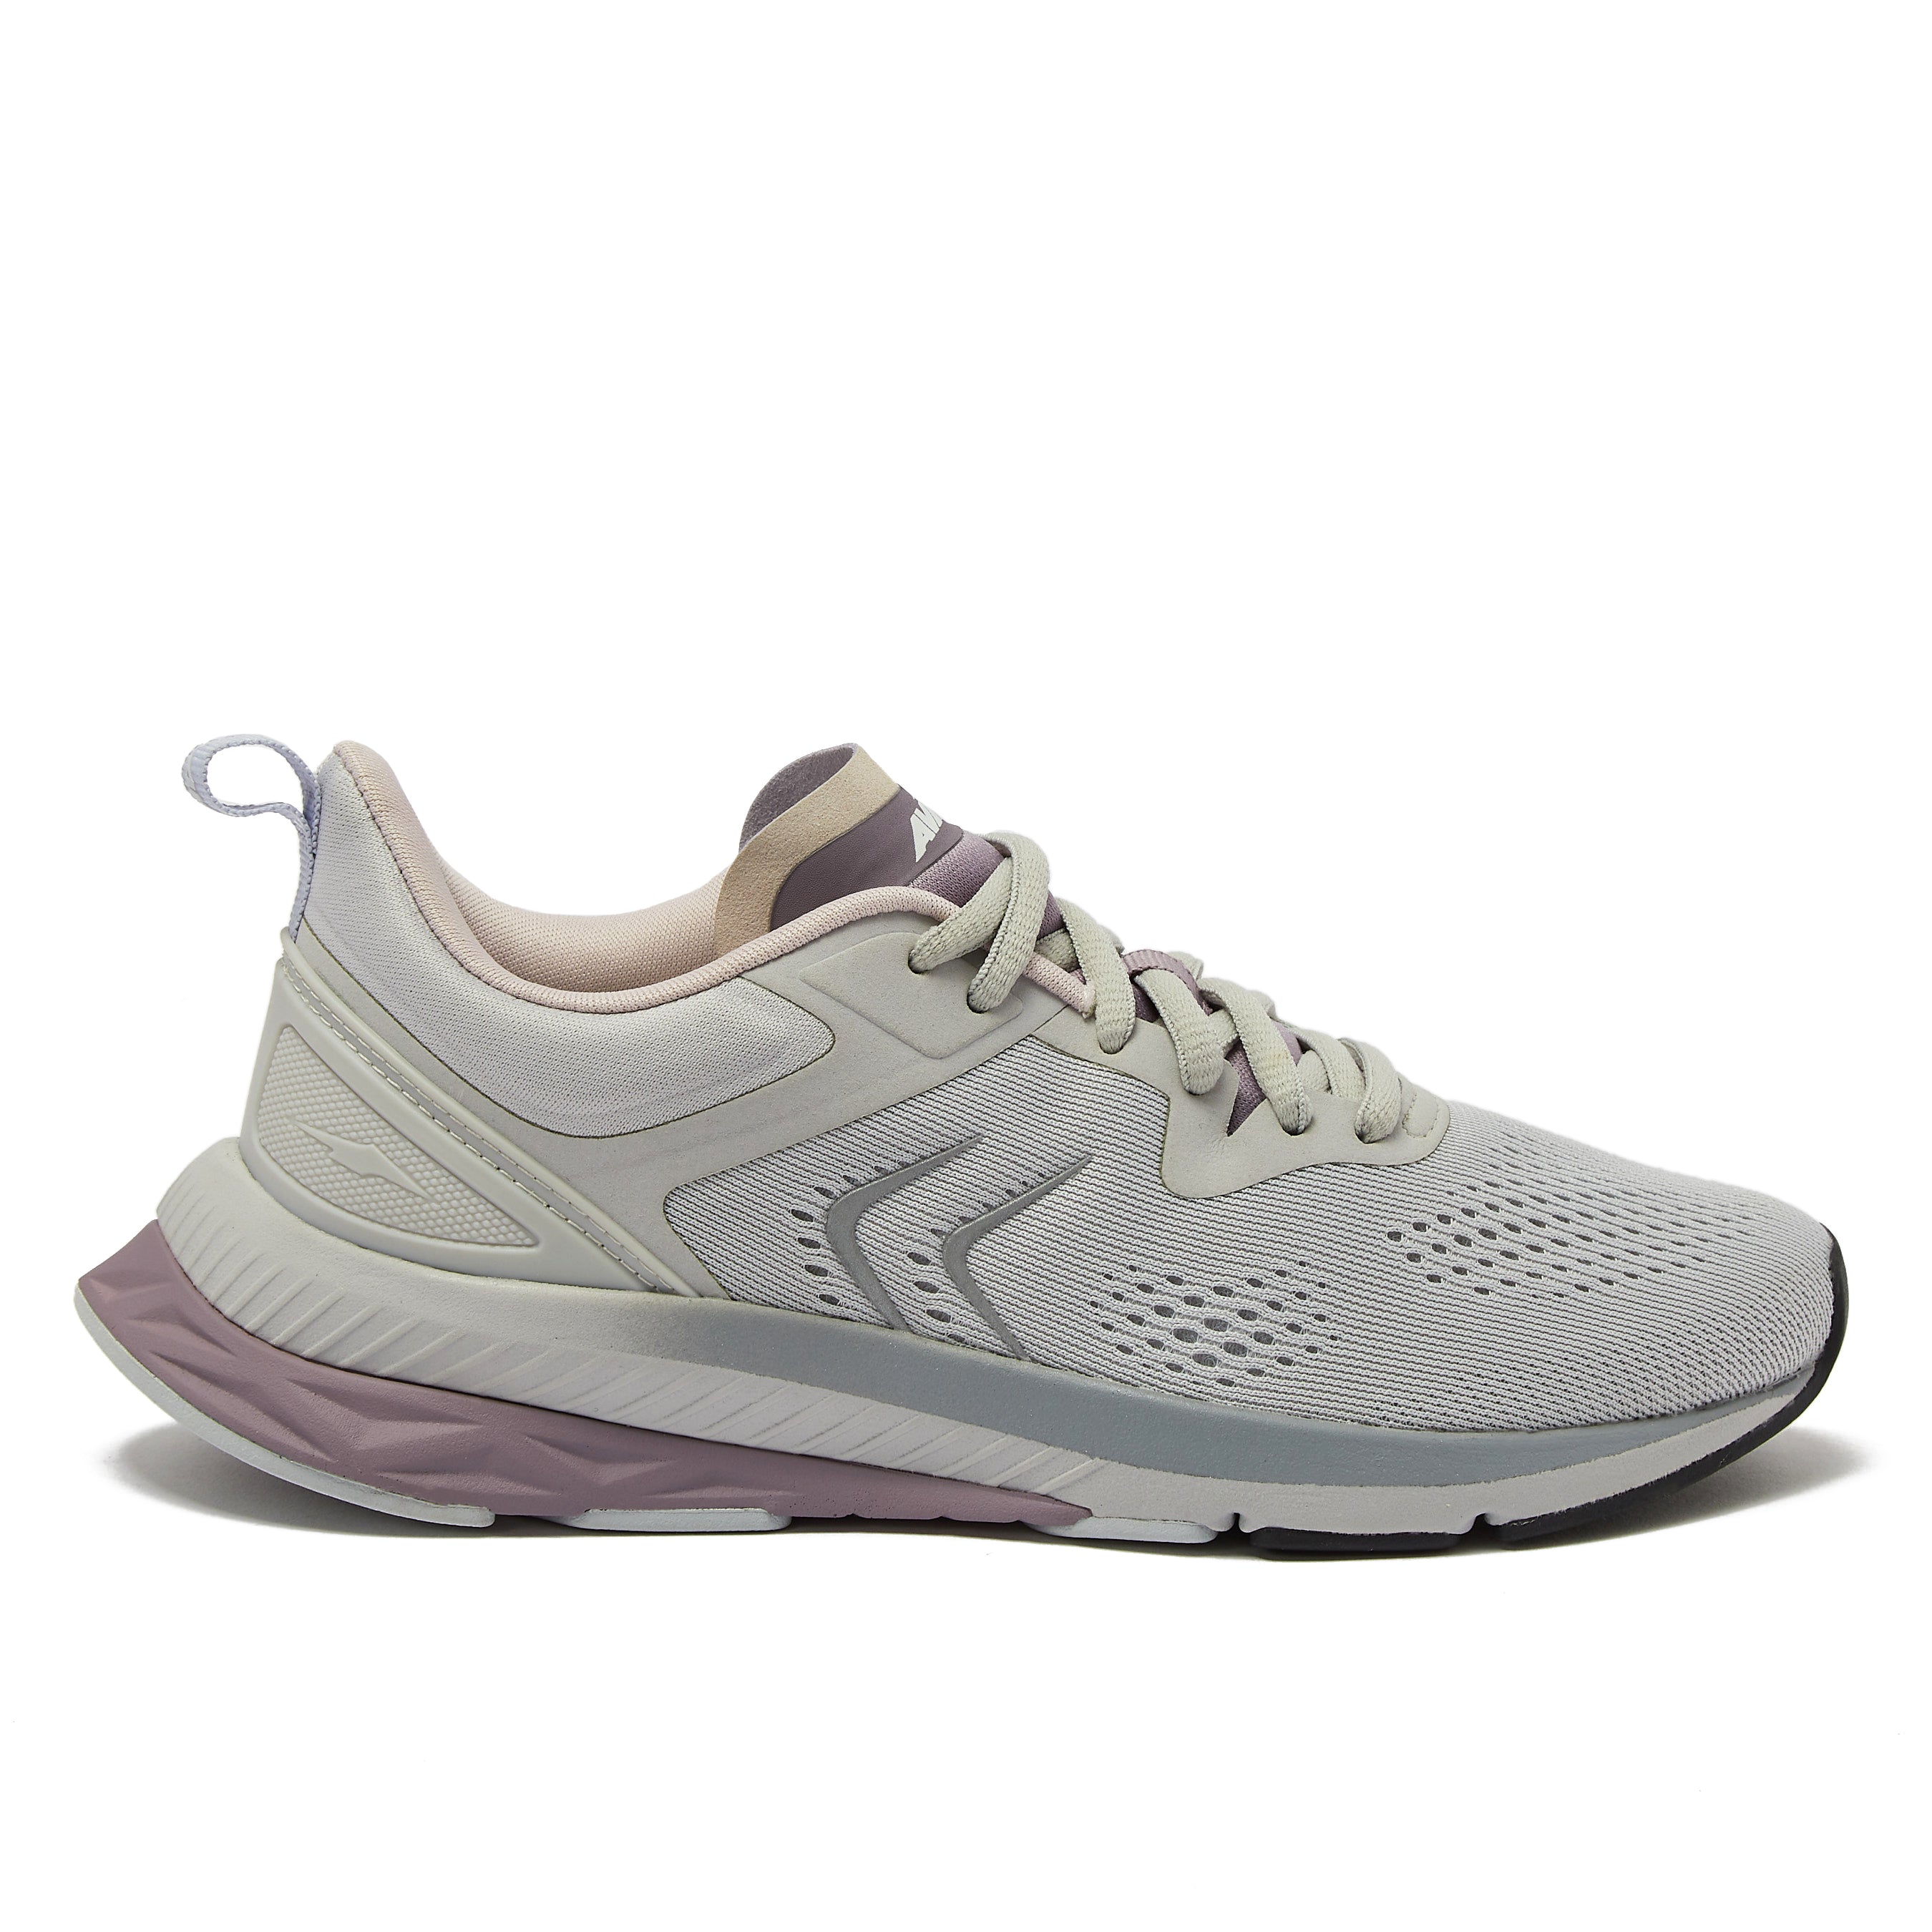 Avia Women's Size 8.5 Gray Running Shoes 28802104